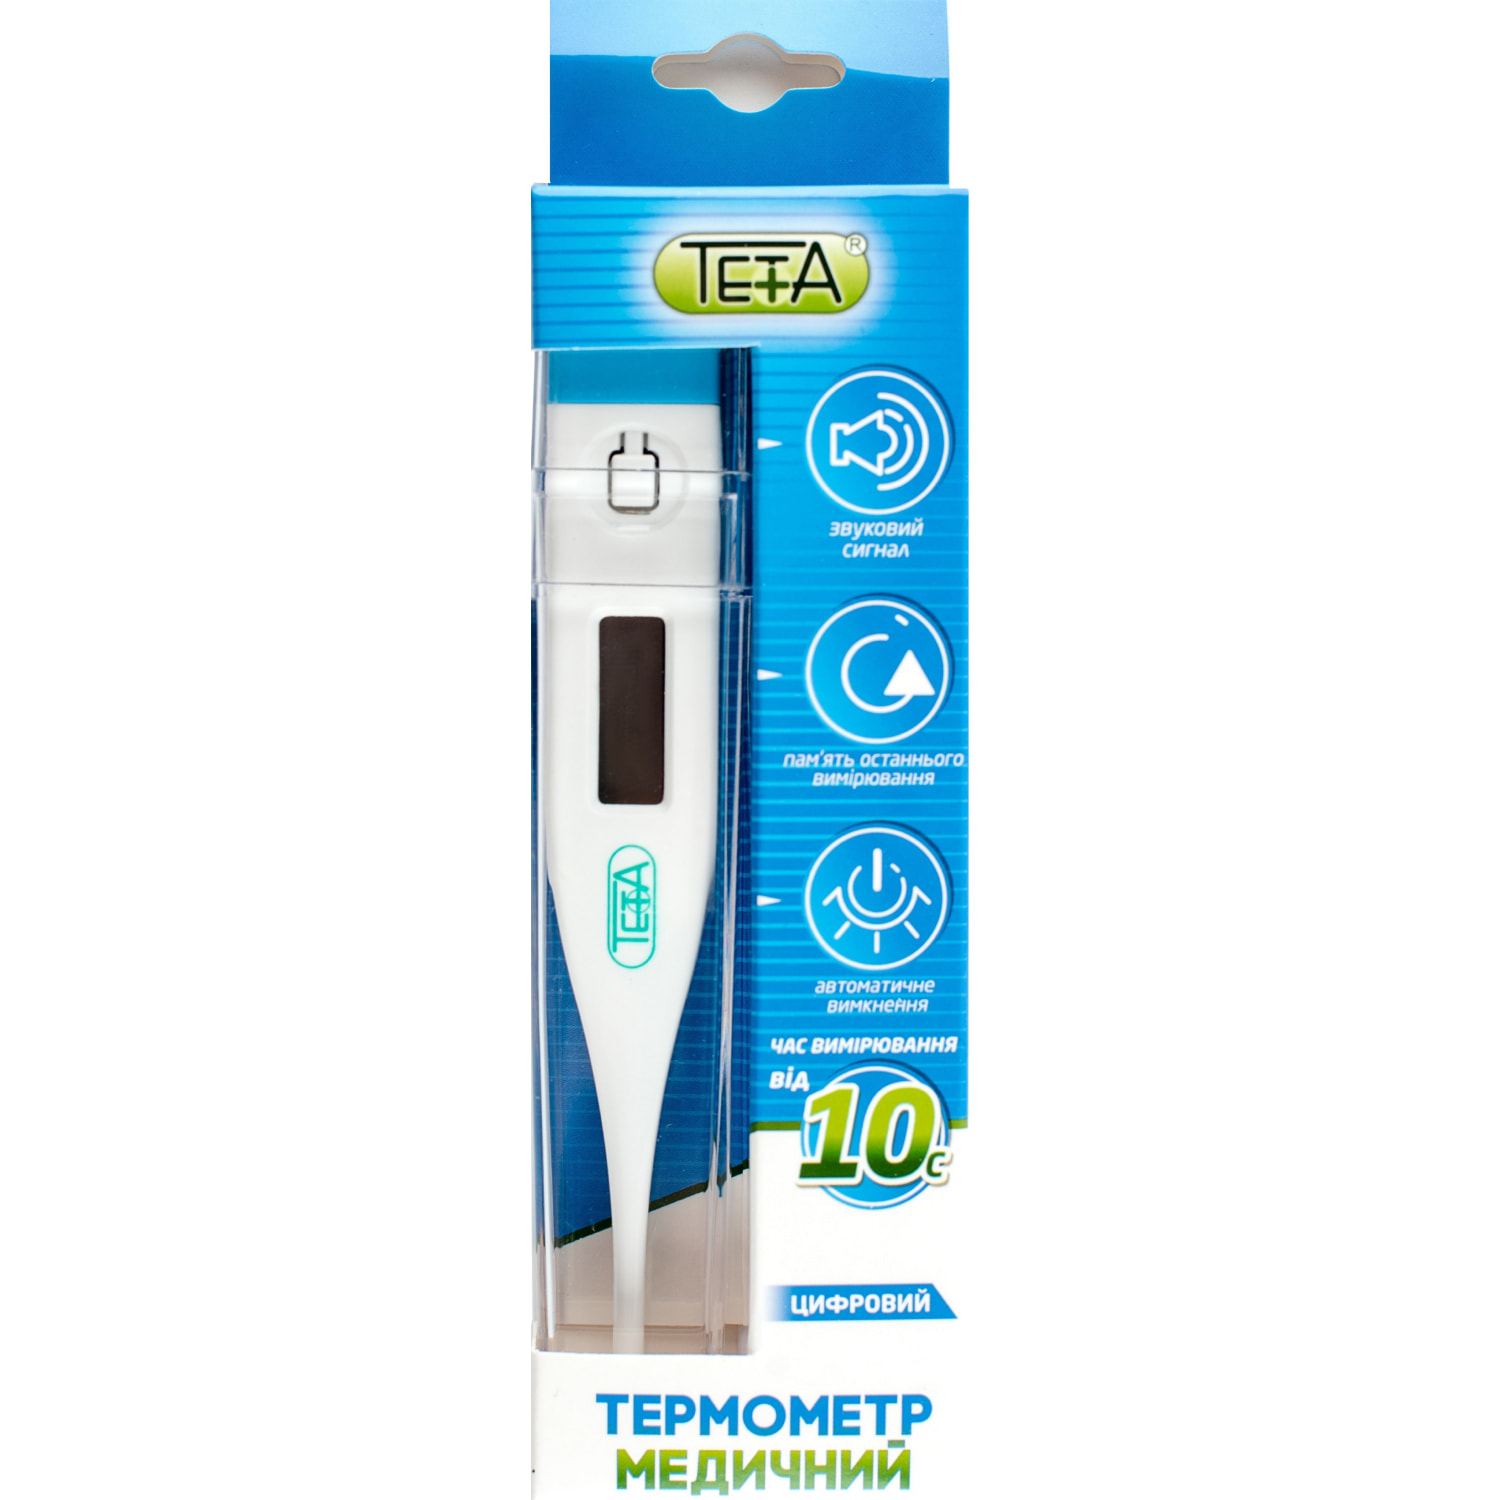 Электронный термометр ВОЛЕС ЕСТ-1